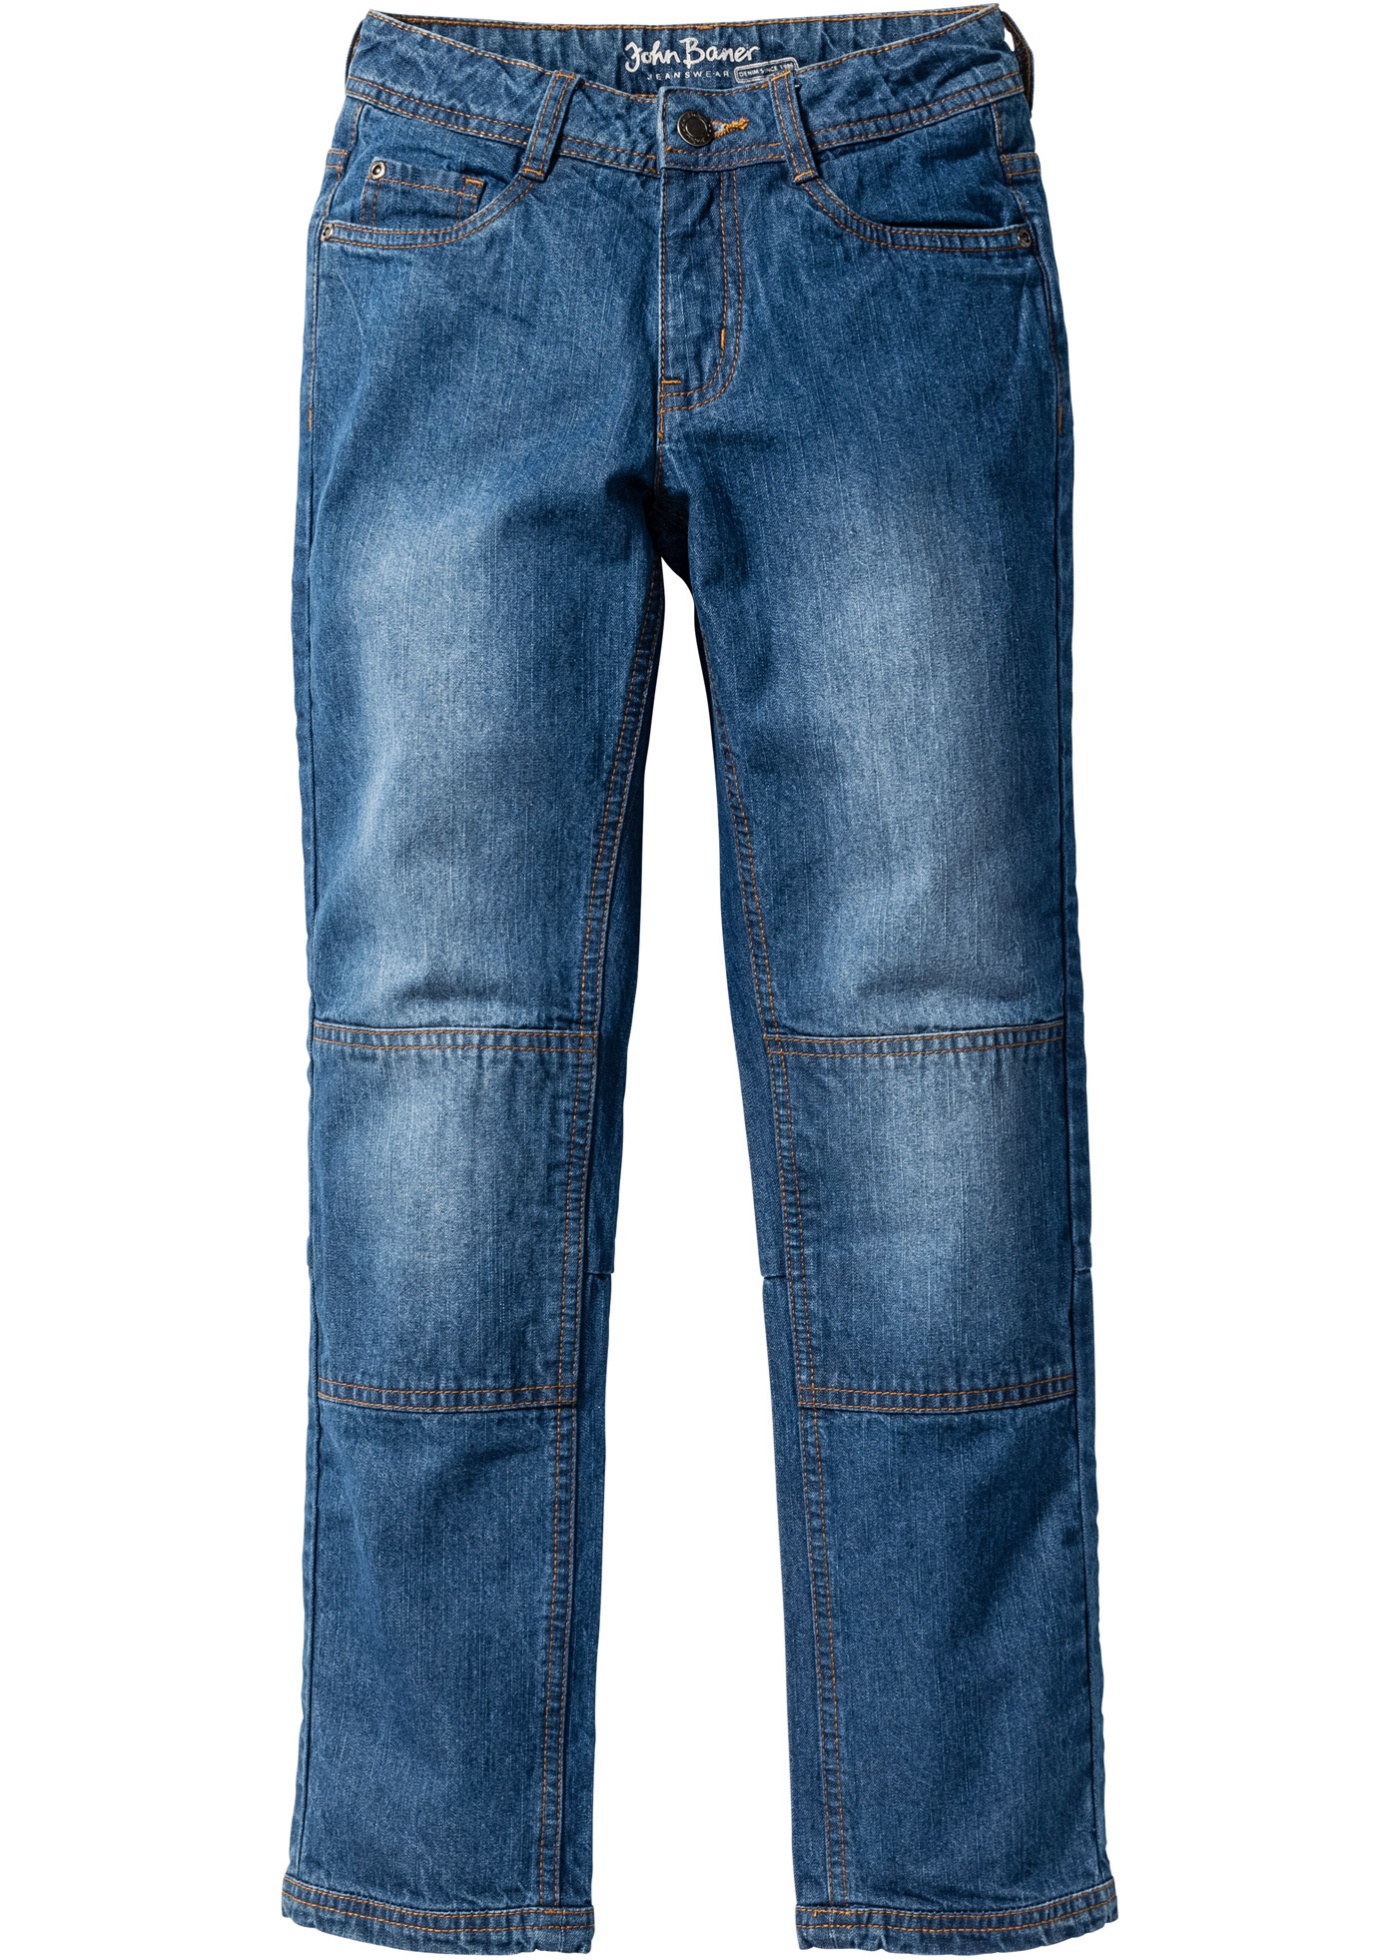 Slitstarka jeans med förstärkt knä, strl. 116-170